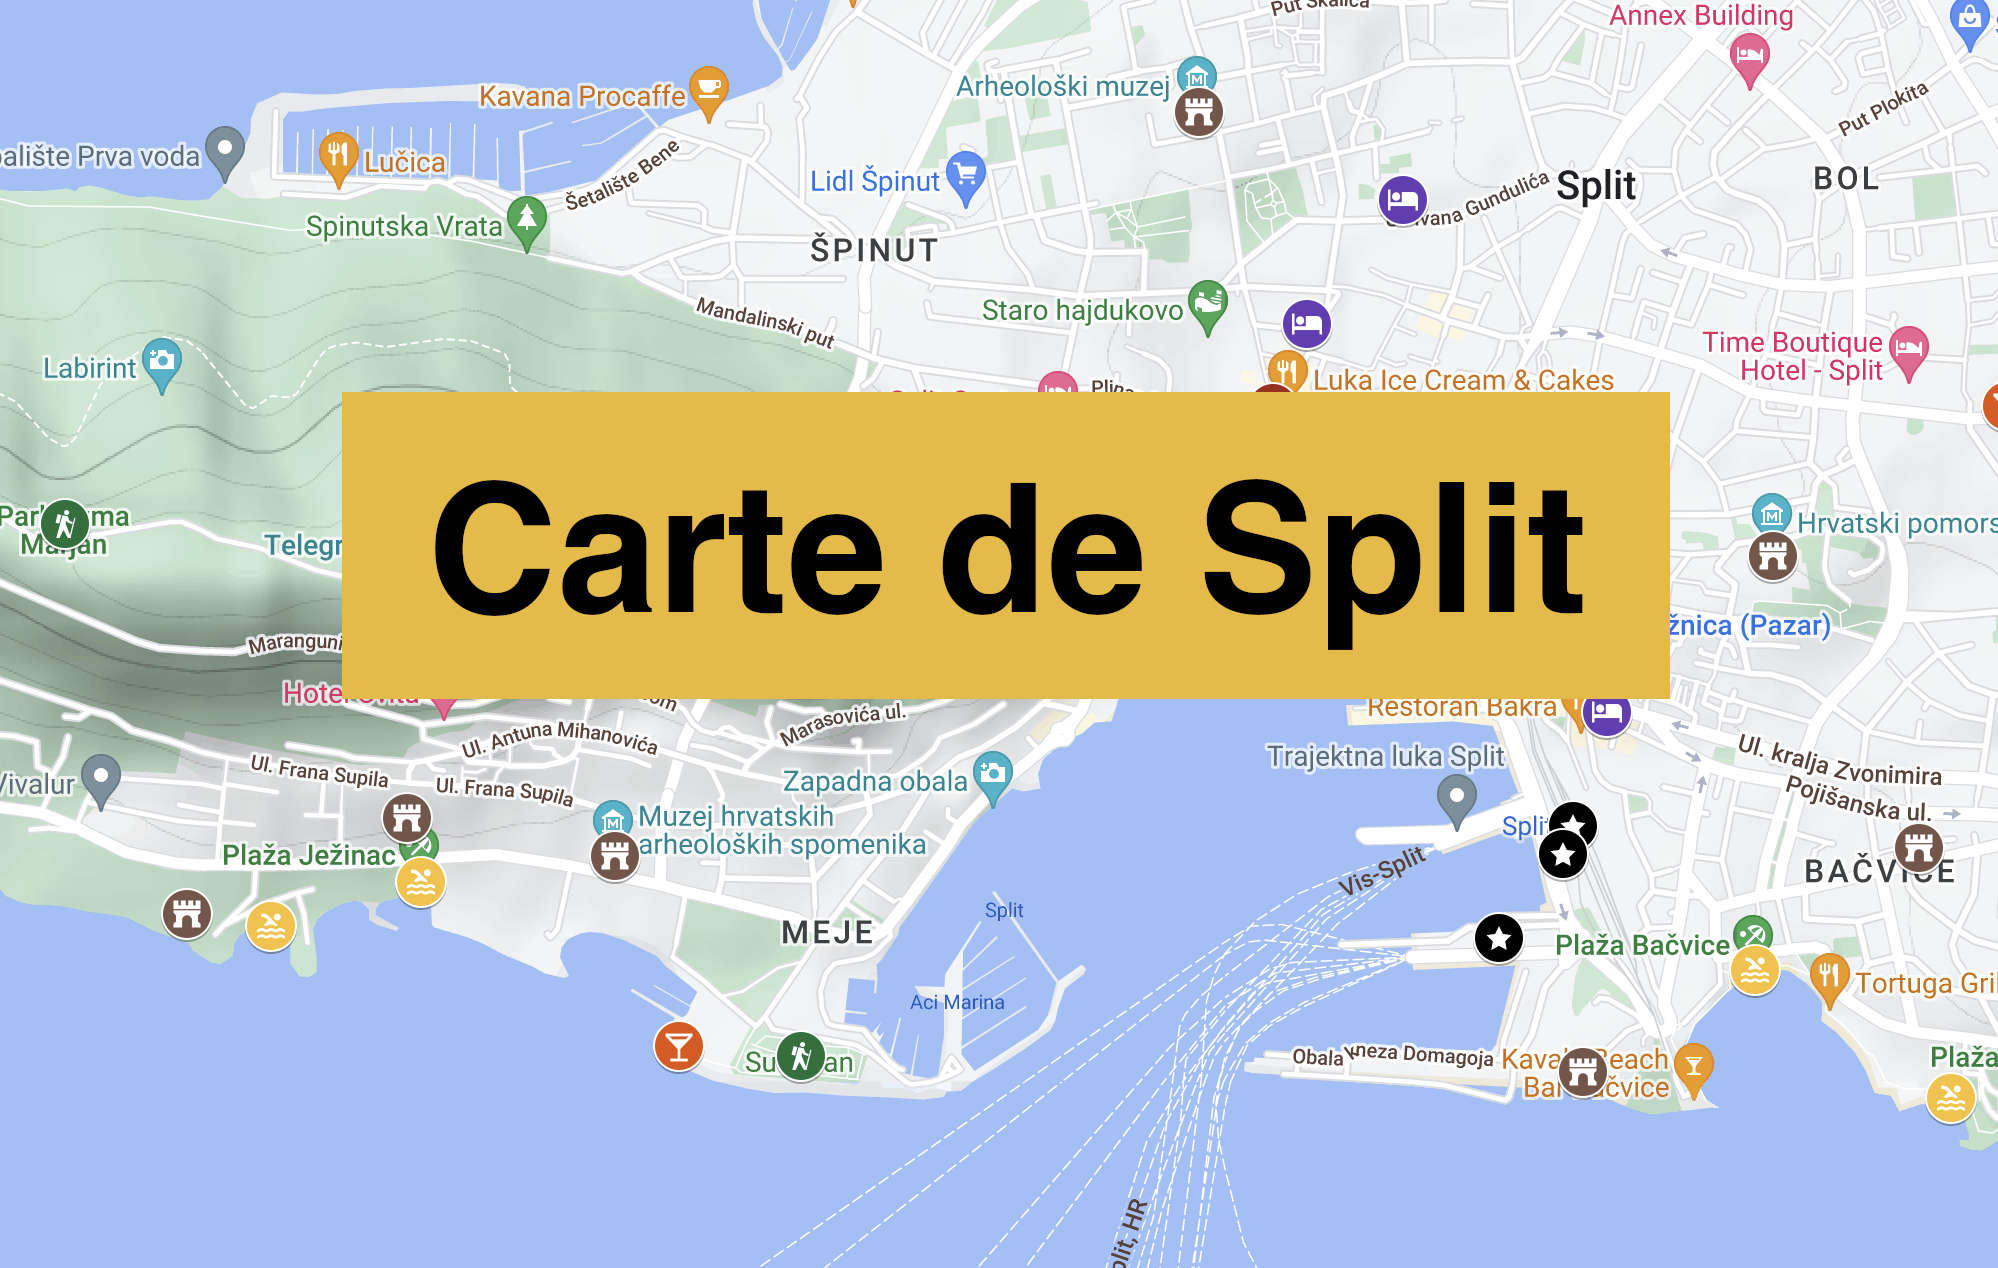 Lire la suite à propos de l’article Carte de Split avec tous les lieux du guide